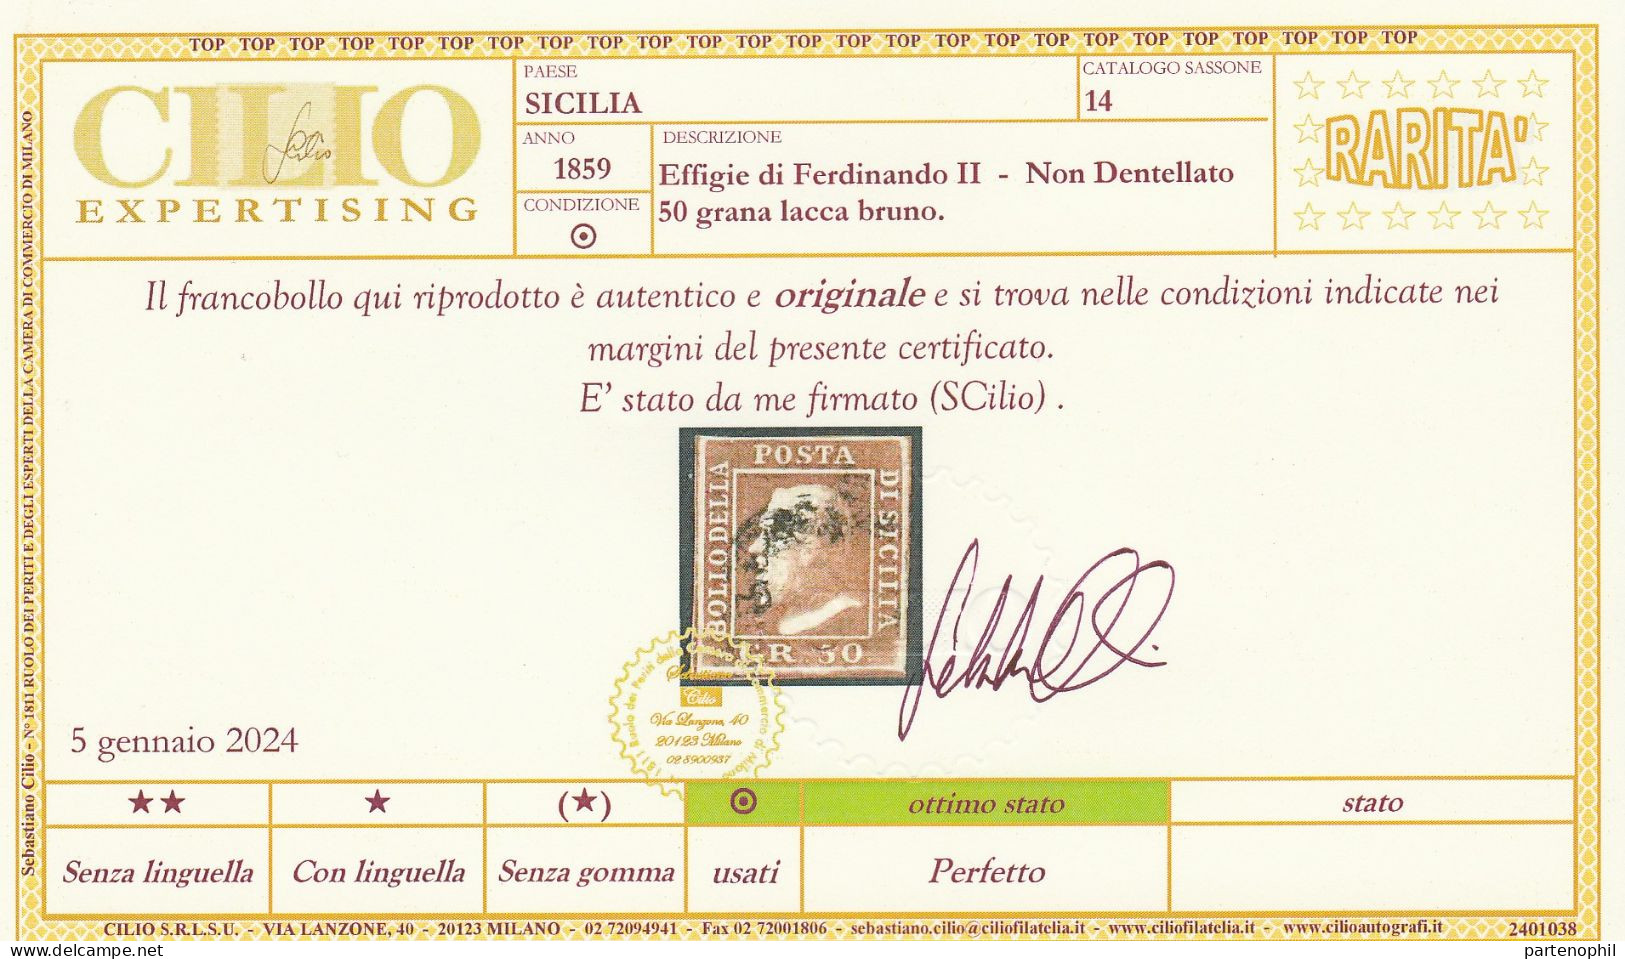 54 - Sicilia 1859 - 50 Gr. Lacca Bruno N. 14. Firmato E. E A. Diena, Oliva. Cert. Cilio. Cat. € 12000,00. Molto Bello, - Sicile